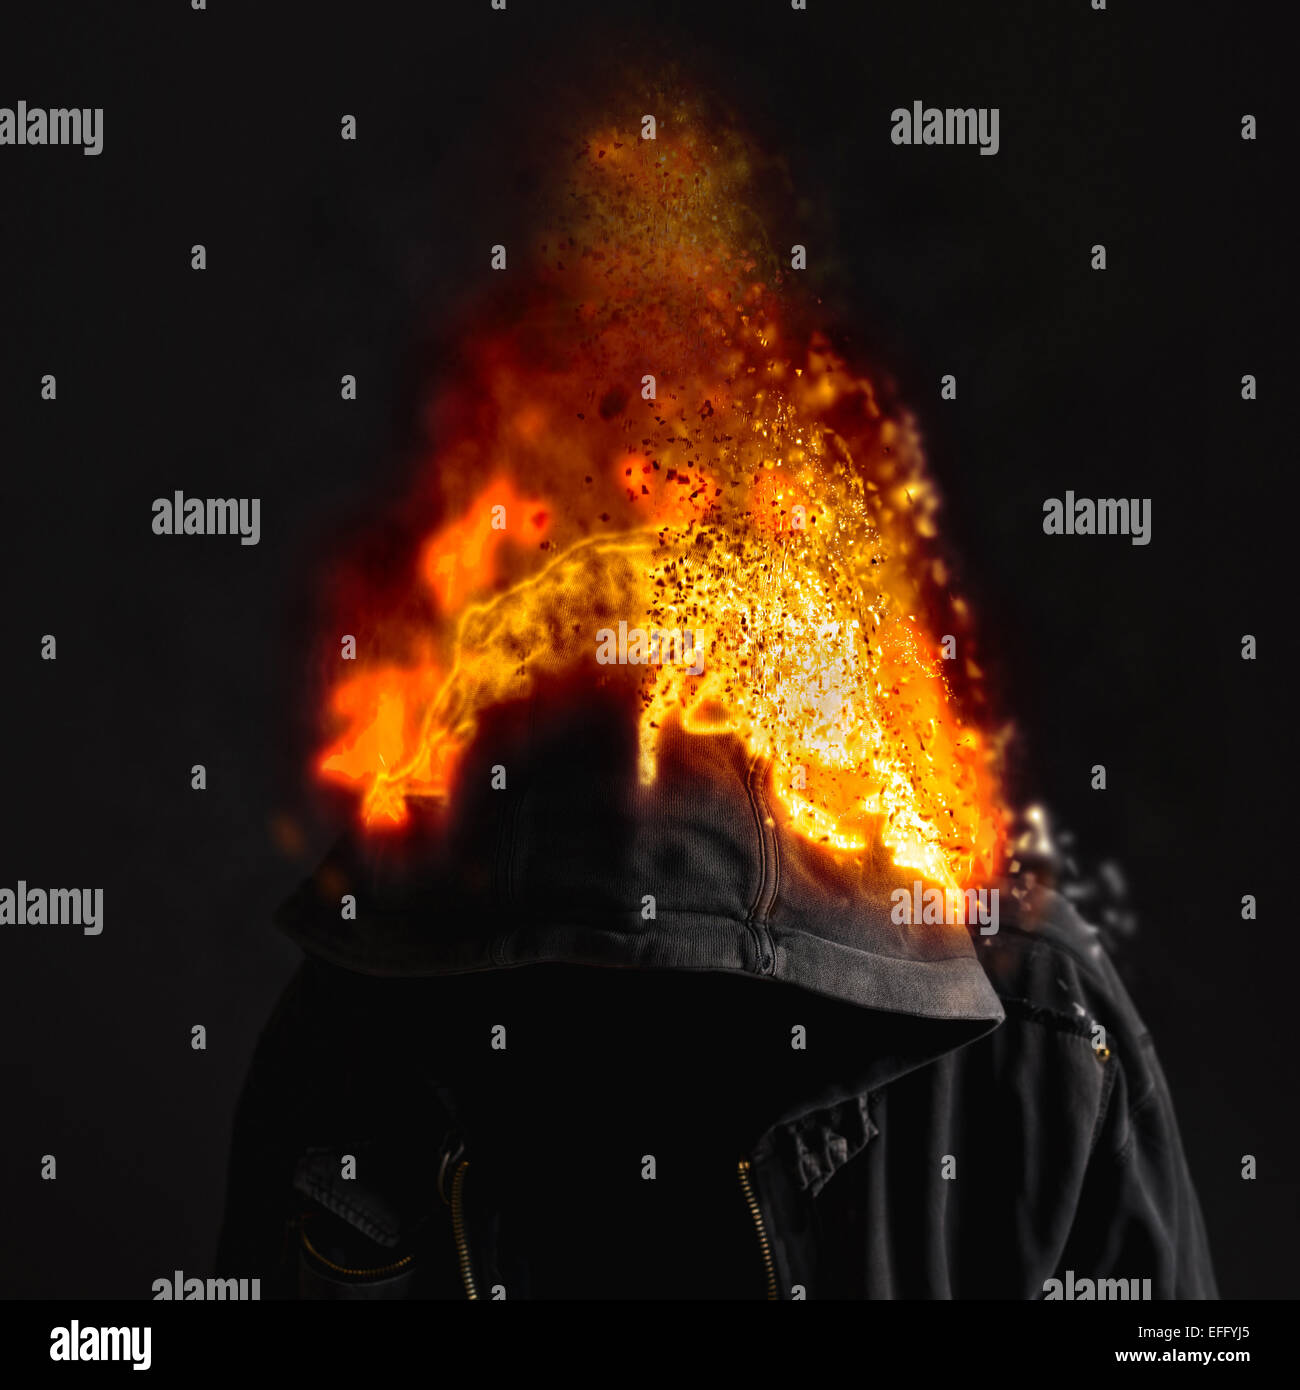 Fahren Sie auf Feuer, gesichtslosen unbekannt und unkenntlich Mann mit Kapuze in Brand. Stockfoto